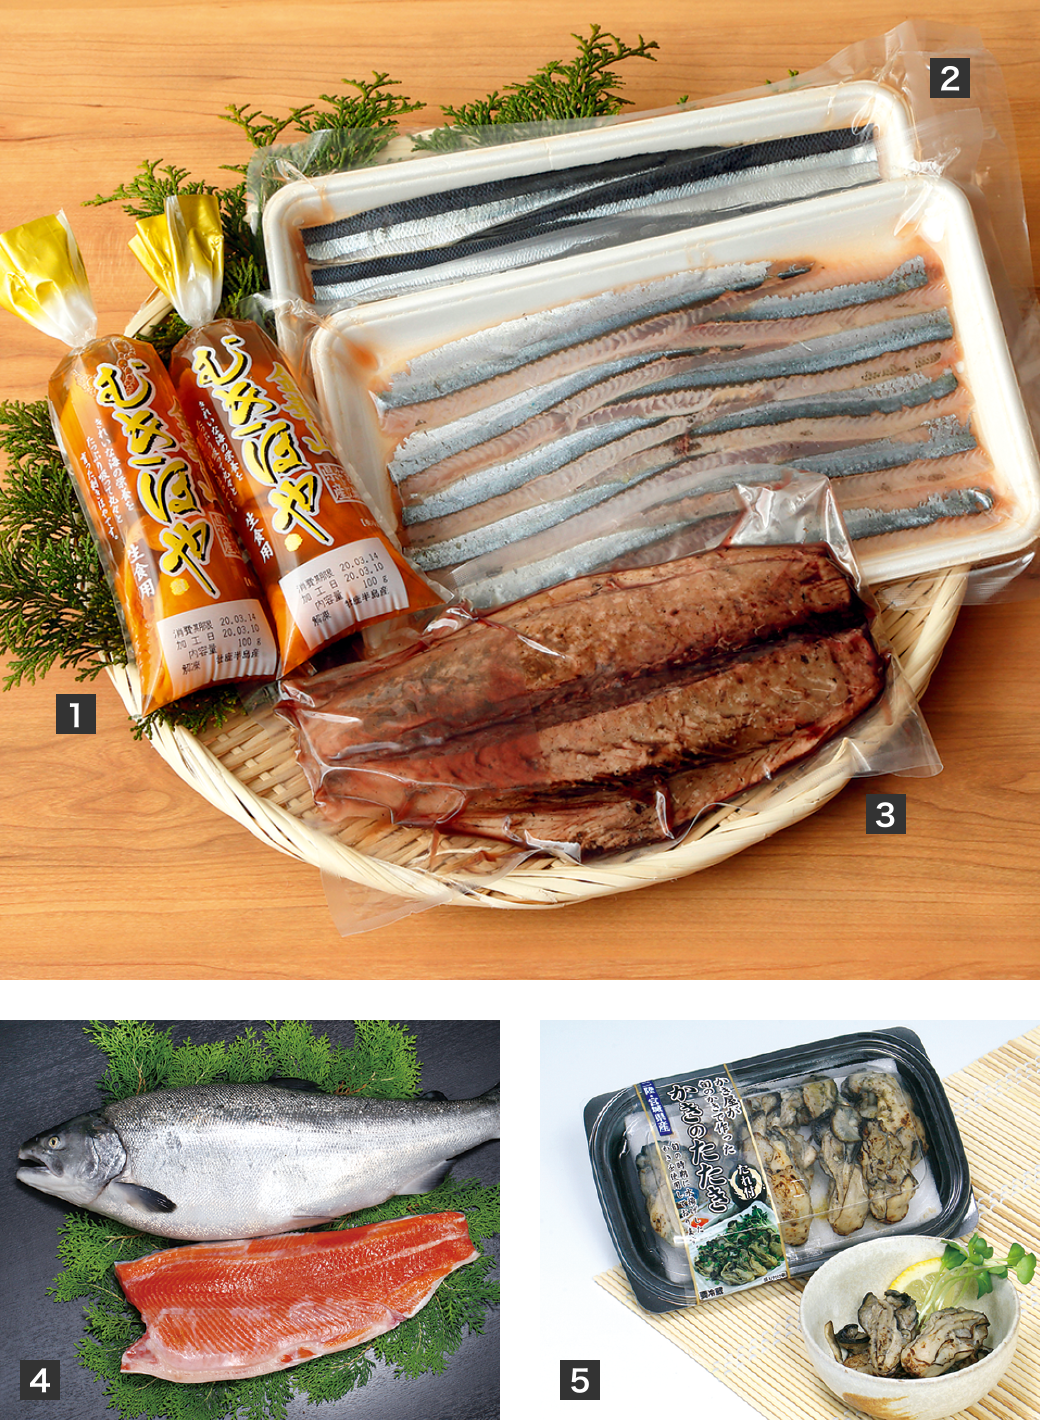 加工食品
【1】ほや
【2】さんまの刺身
【3】鰹のたたき
【4】銀鮭
【5】かきのたたき